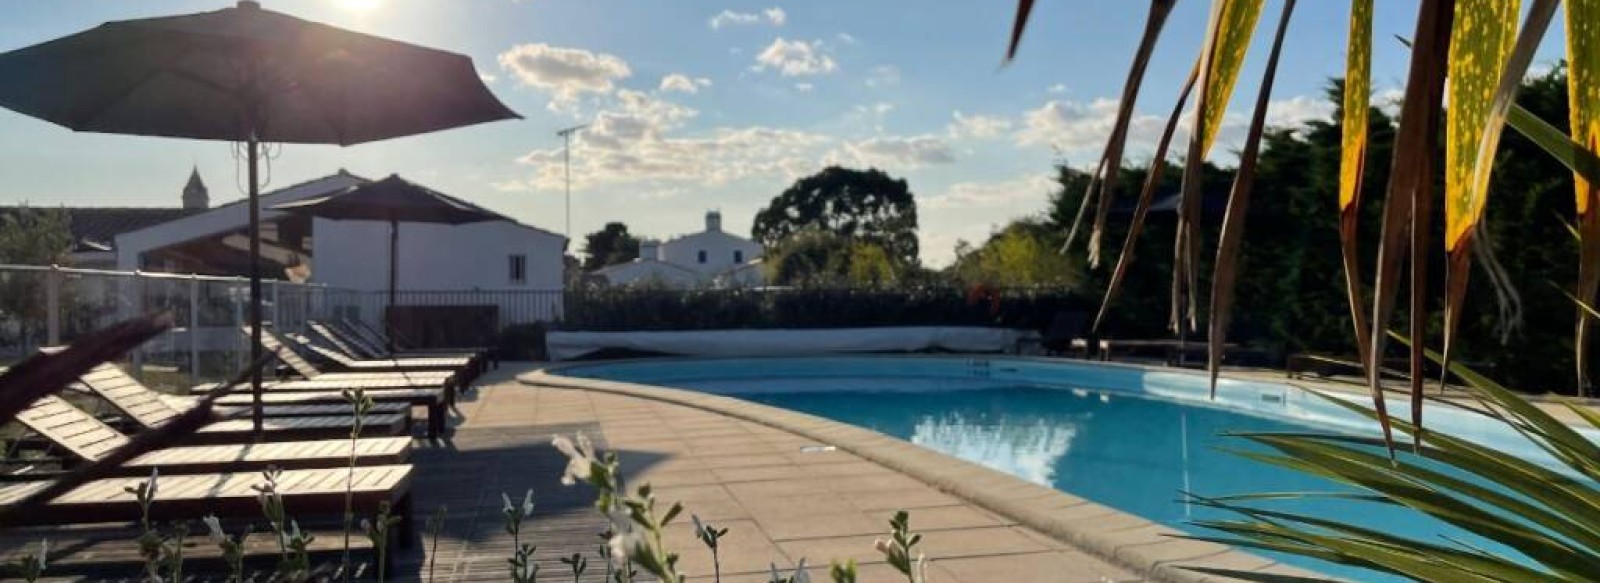 Maison de vacances dans residence avec piscine a deux pas du centre de Noirmoutier ne l'ile